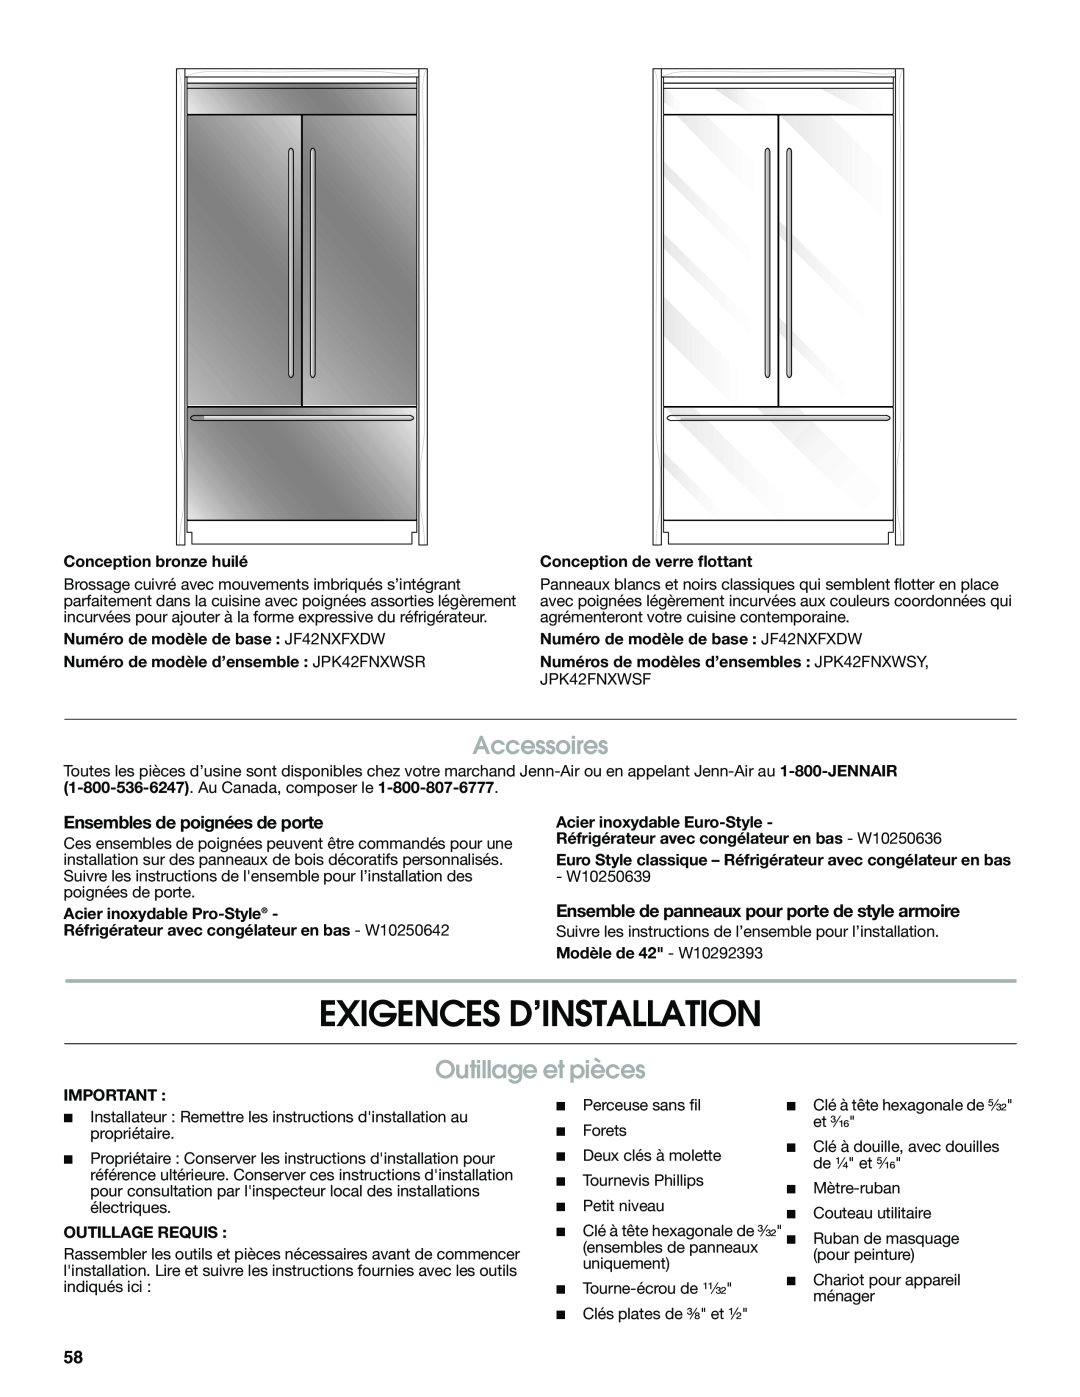 Jenn-Air W10379137A manual Exigences D’Installation, Outillage et pièces, Accessoires, Ensembles de poignées de porte 